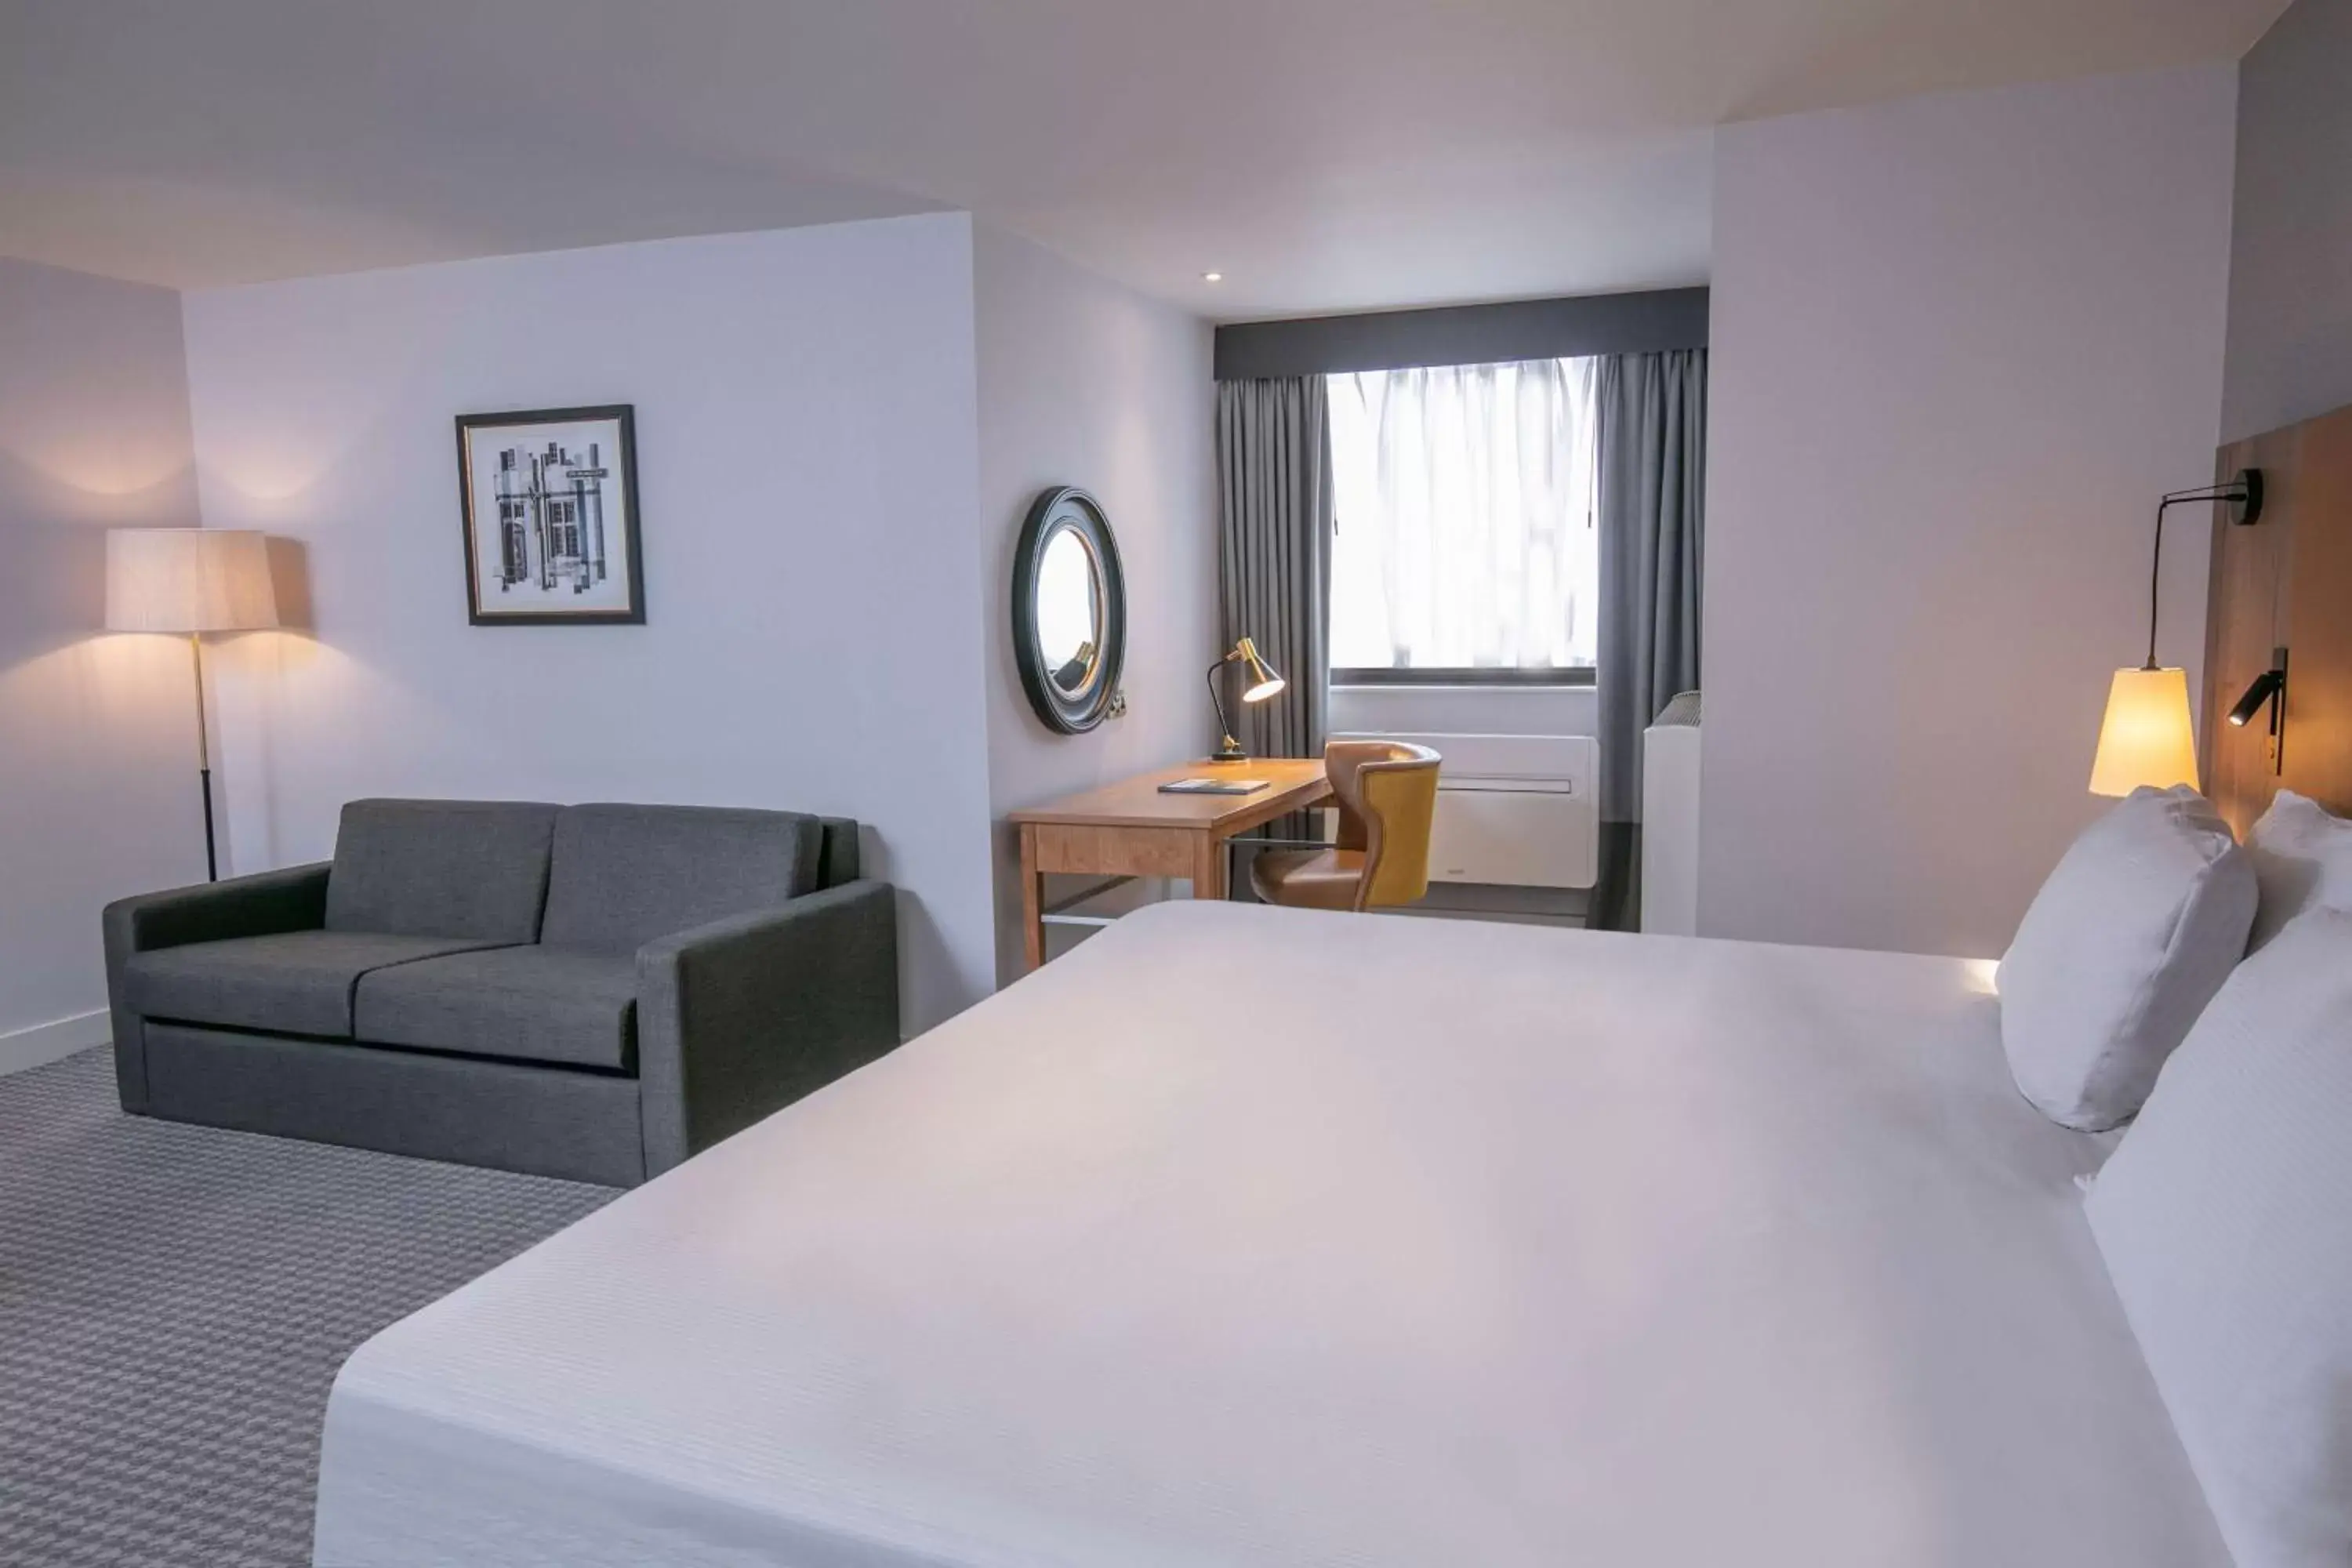 Bedroom in DoubleTree by Hilton Oxford Belfry